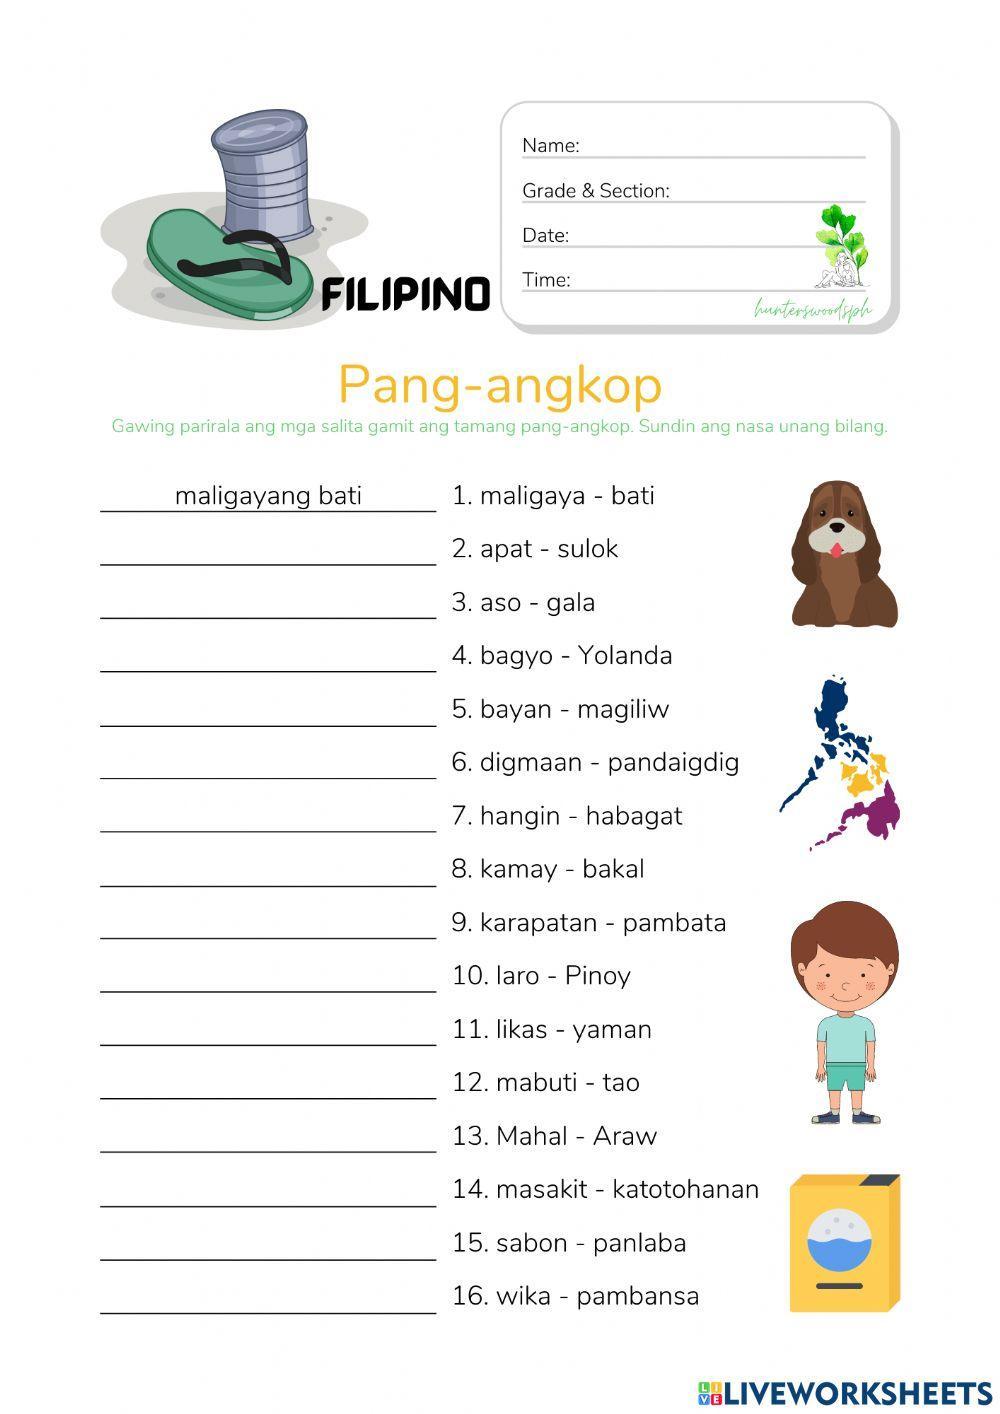 Pang-angkop (HuntersWoodsPH Filipino)